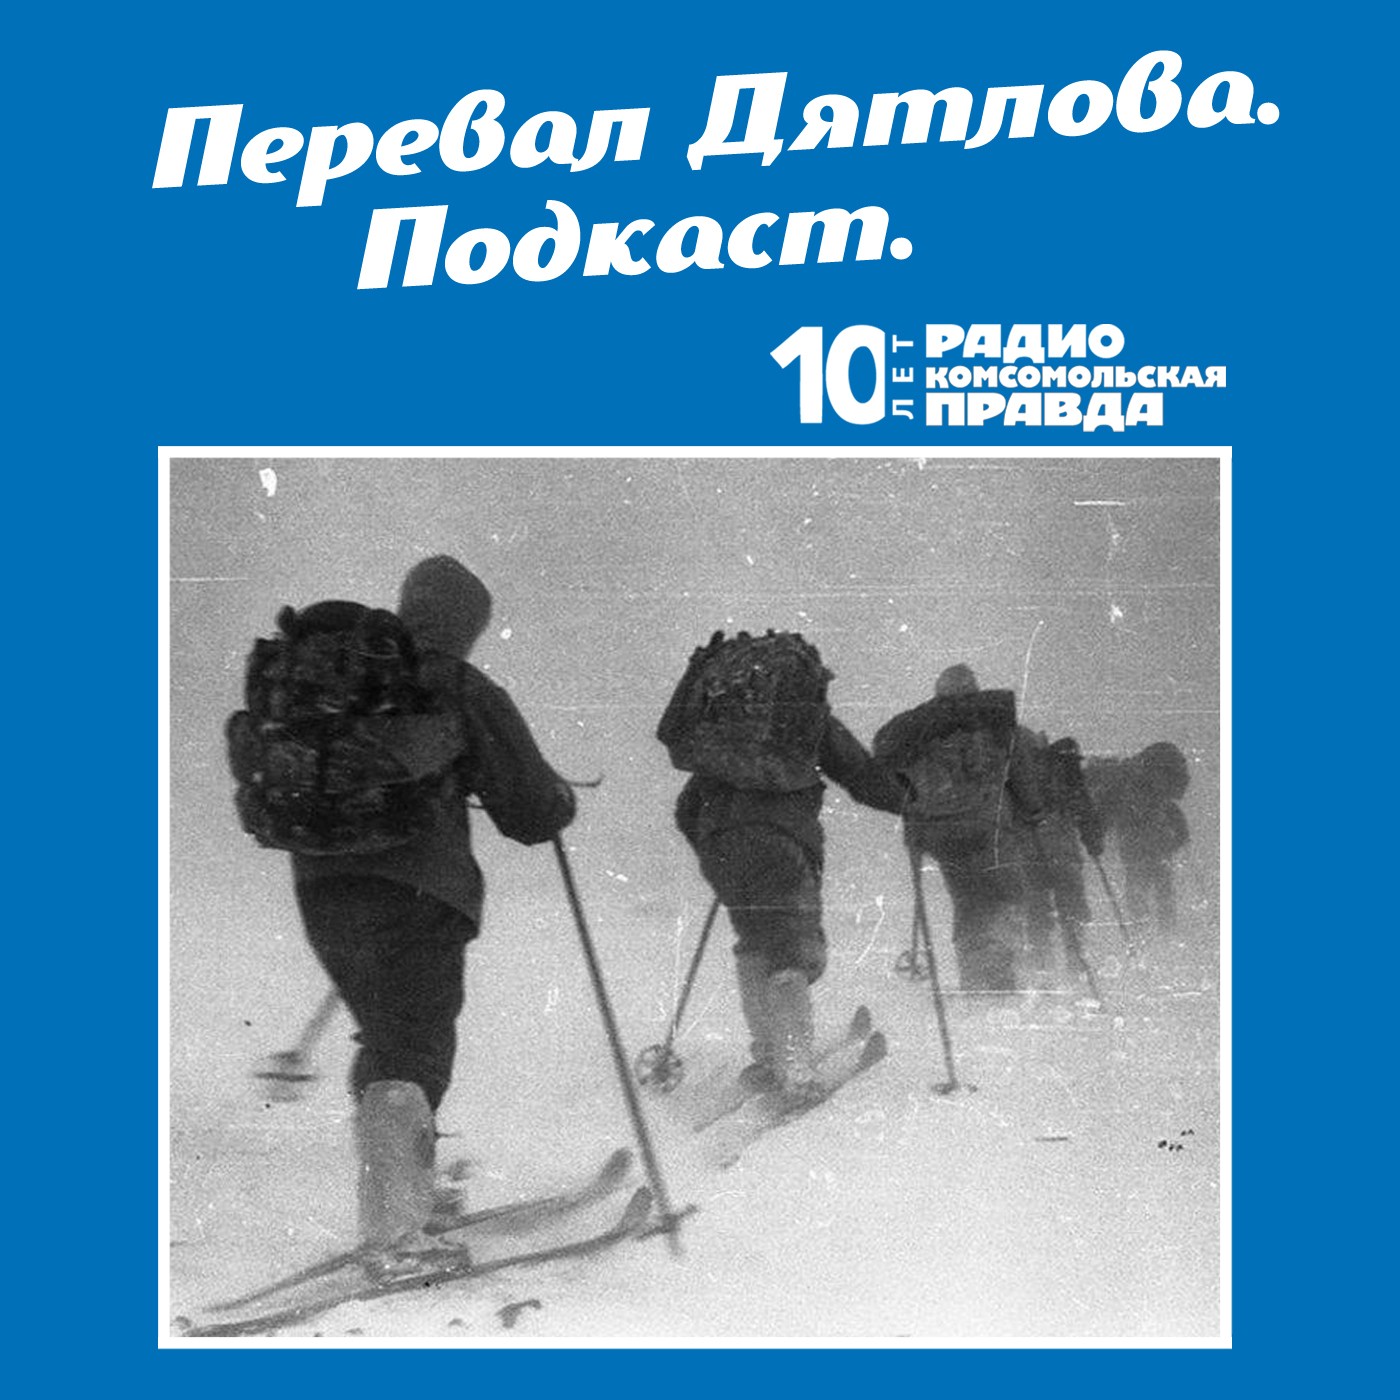 Скачать Трагедия на перевале Дятлова: 64 версии загадочной гибели туристов в 1959 году. Часть 73 и 74 - Радио «Комсомольская правда»